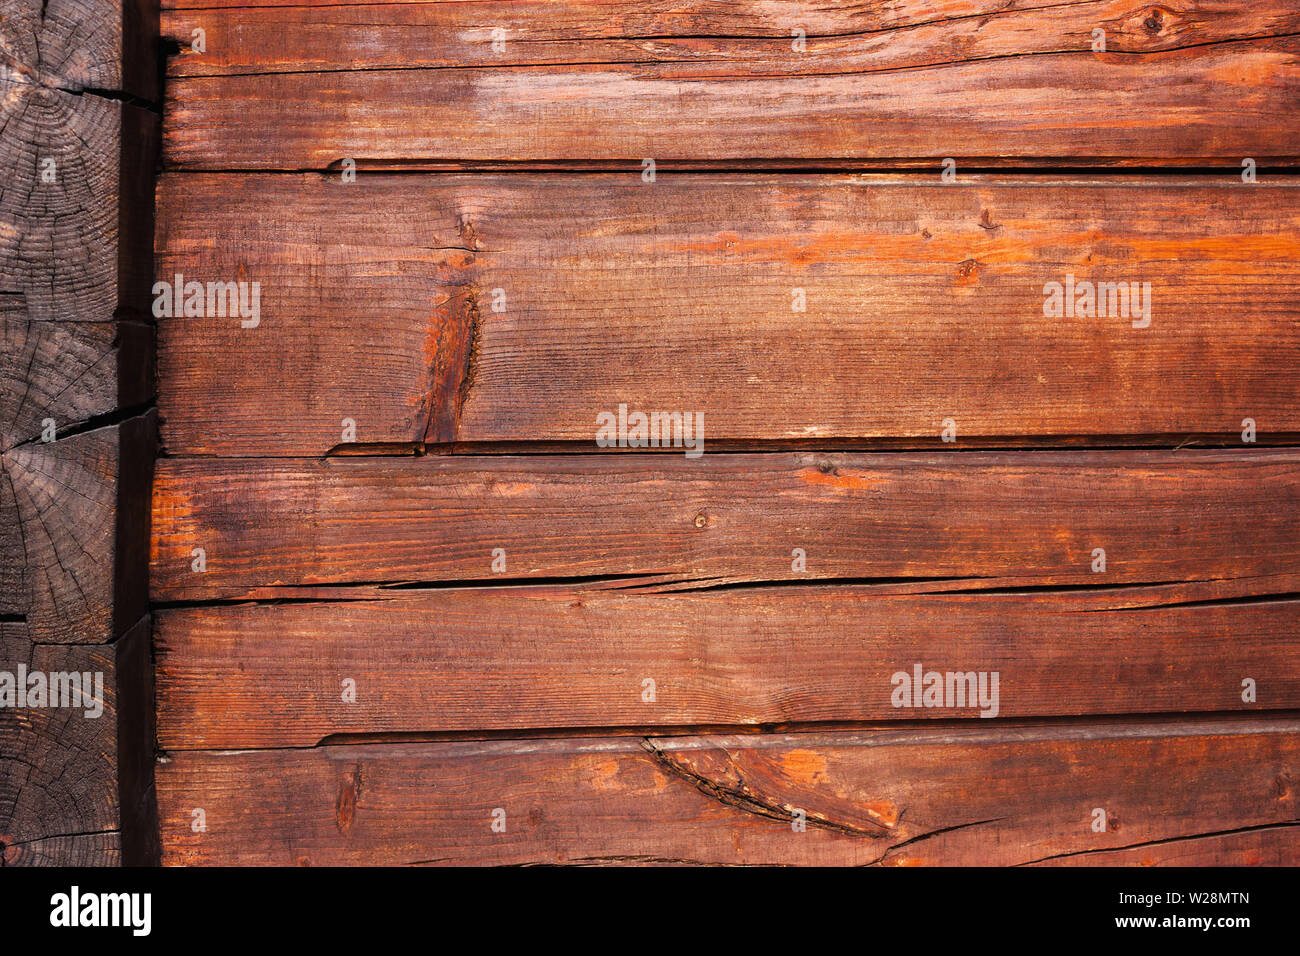 Fond brun en bois de chêne ancien. Style rustique. Planches horizontales Banque D'Images